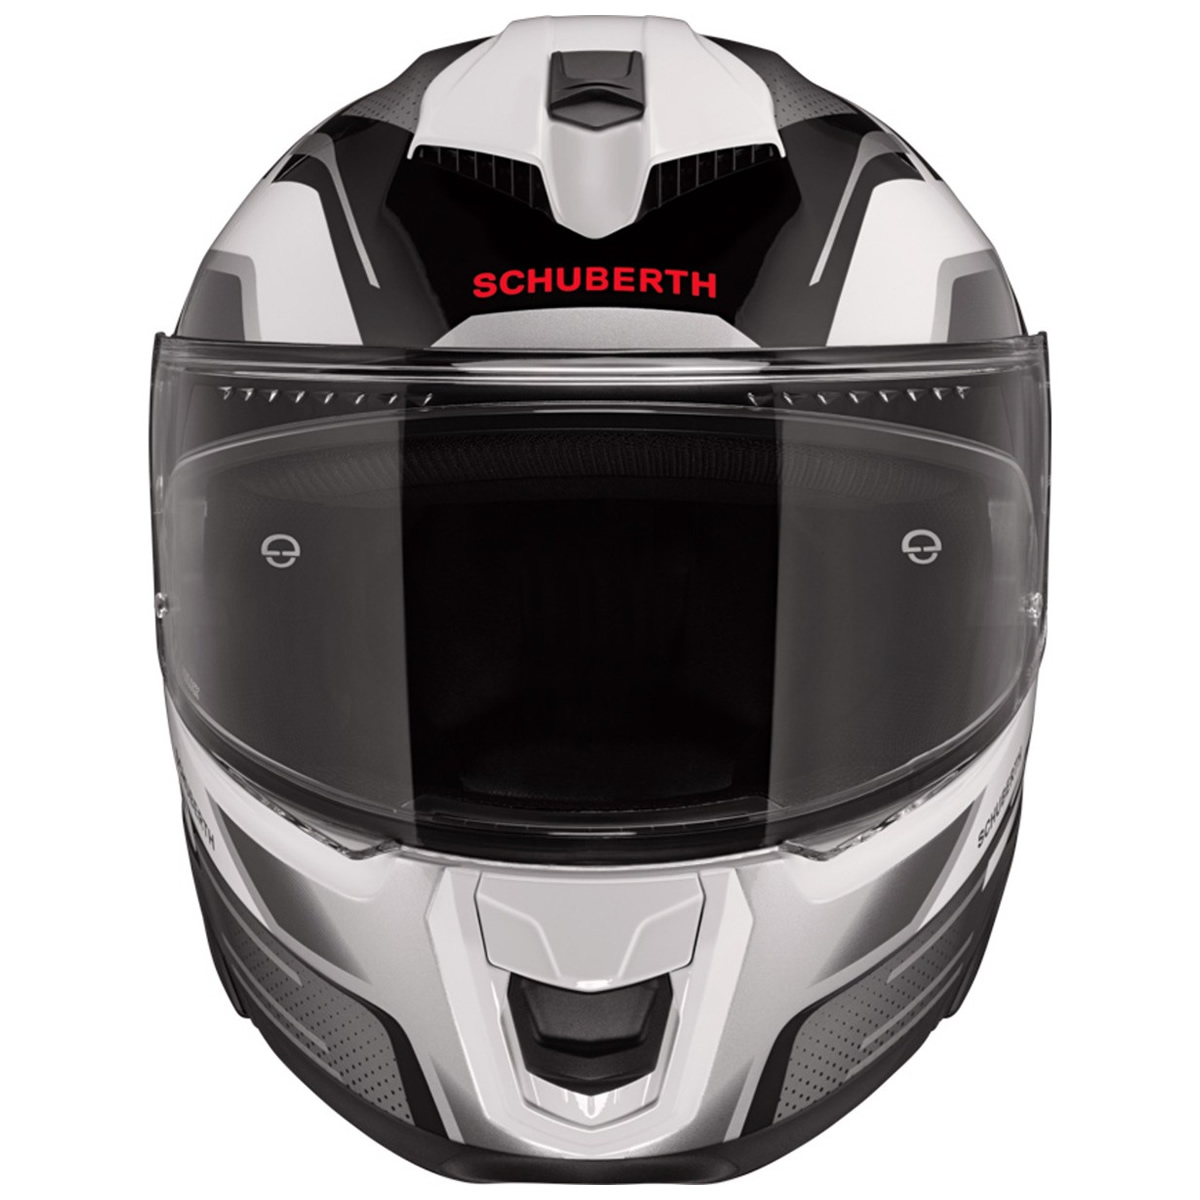 Schuberth S3 Storm Helm, schwarz-weiß-silber